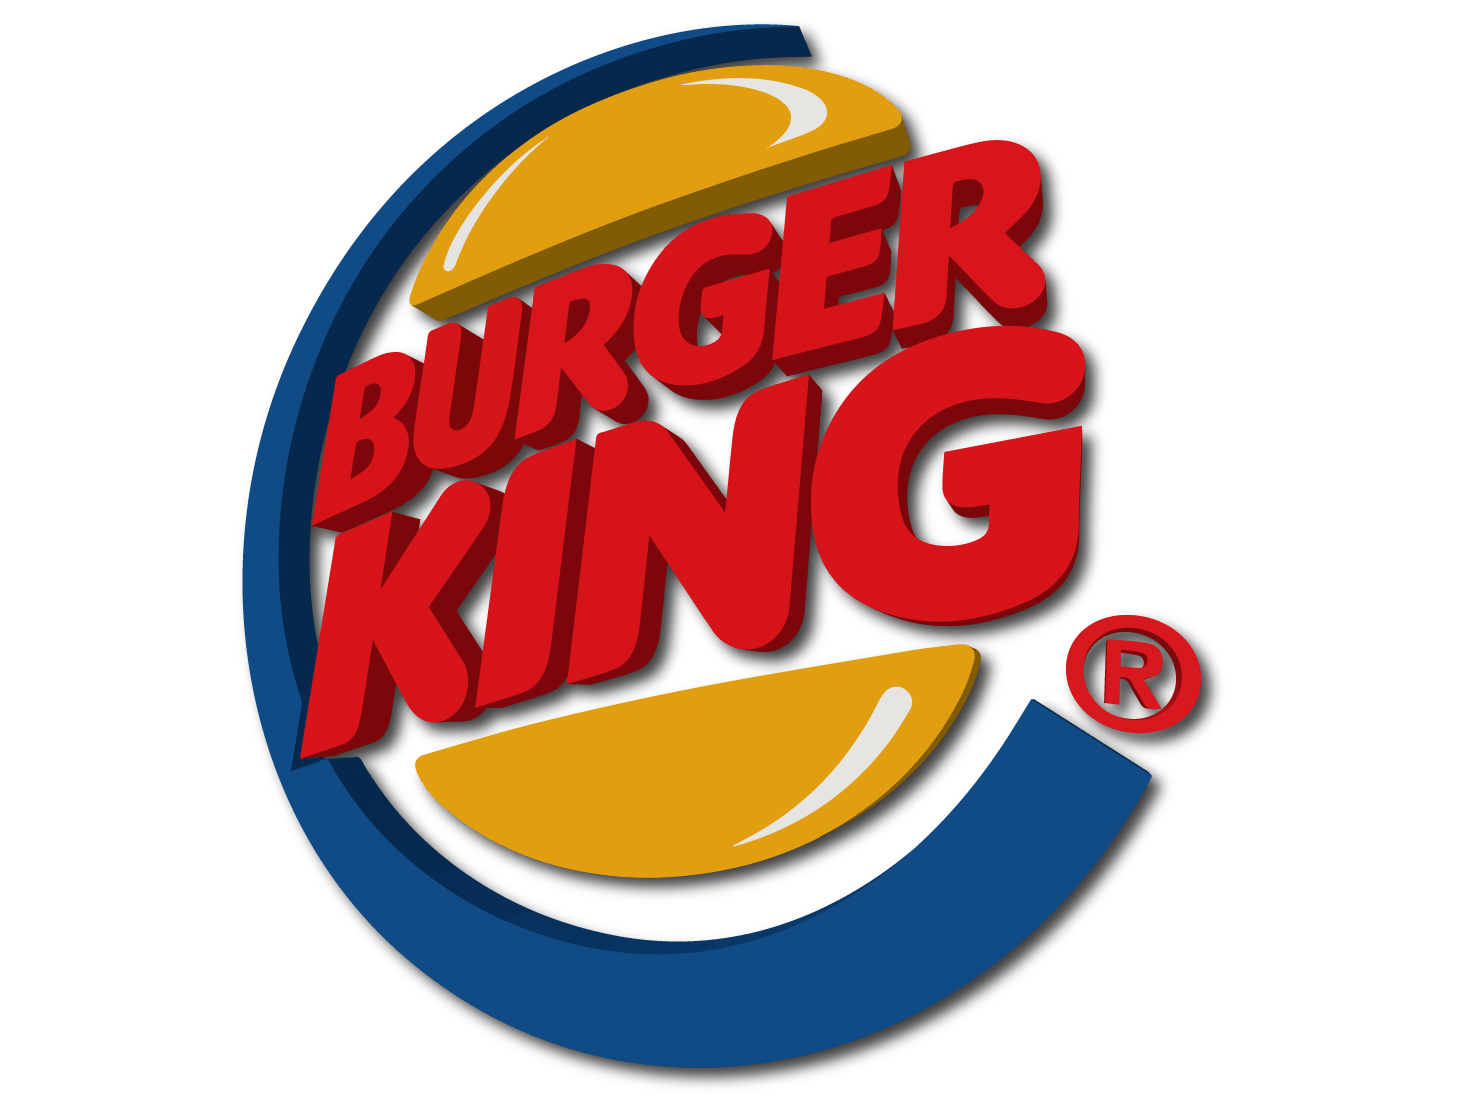 Frites Burger King Png Transparents Stickpng Images